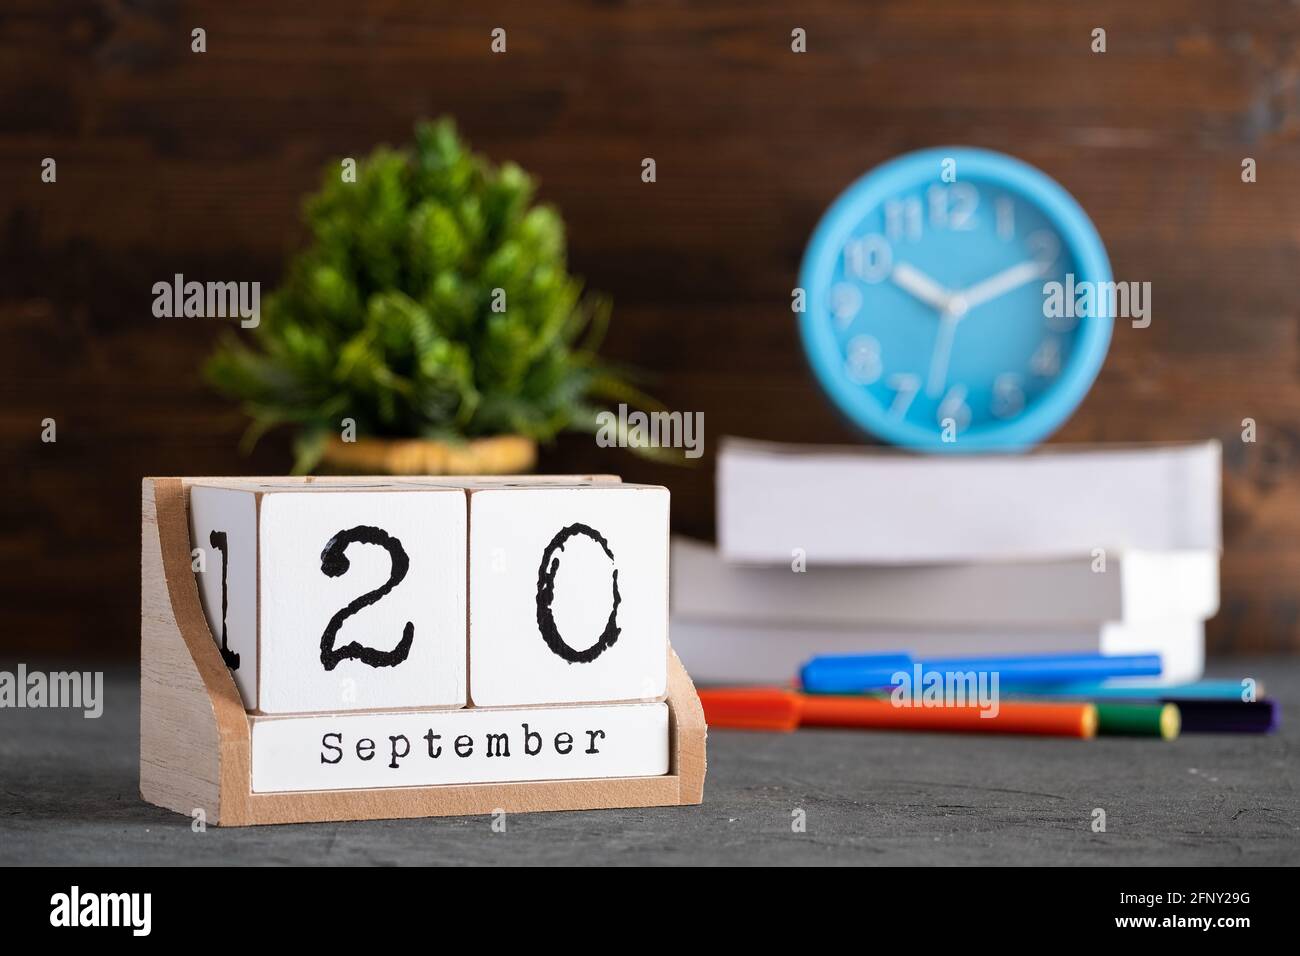 20 septembre. Septembre 20 calendrier cube en bois avec des objets flous sur fond. Banque D'Images